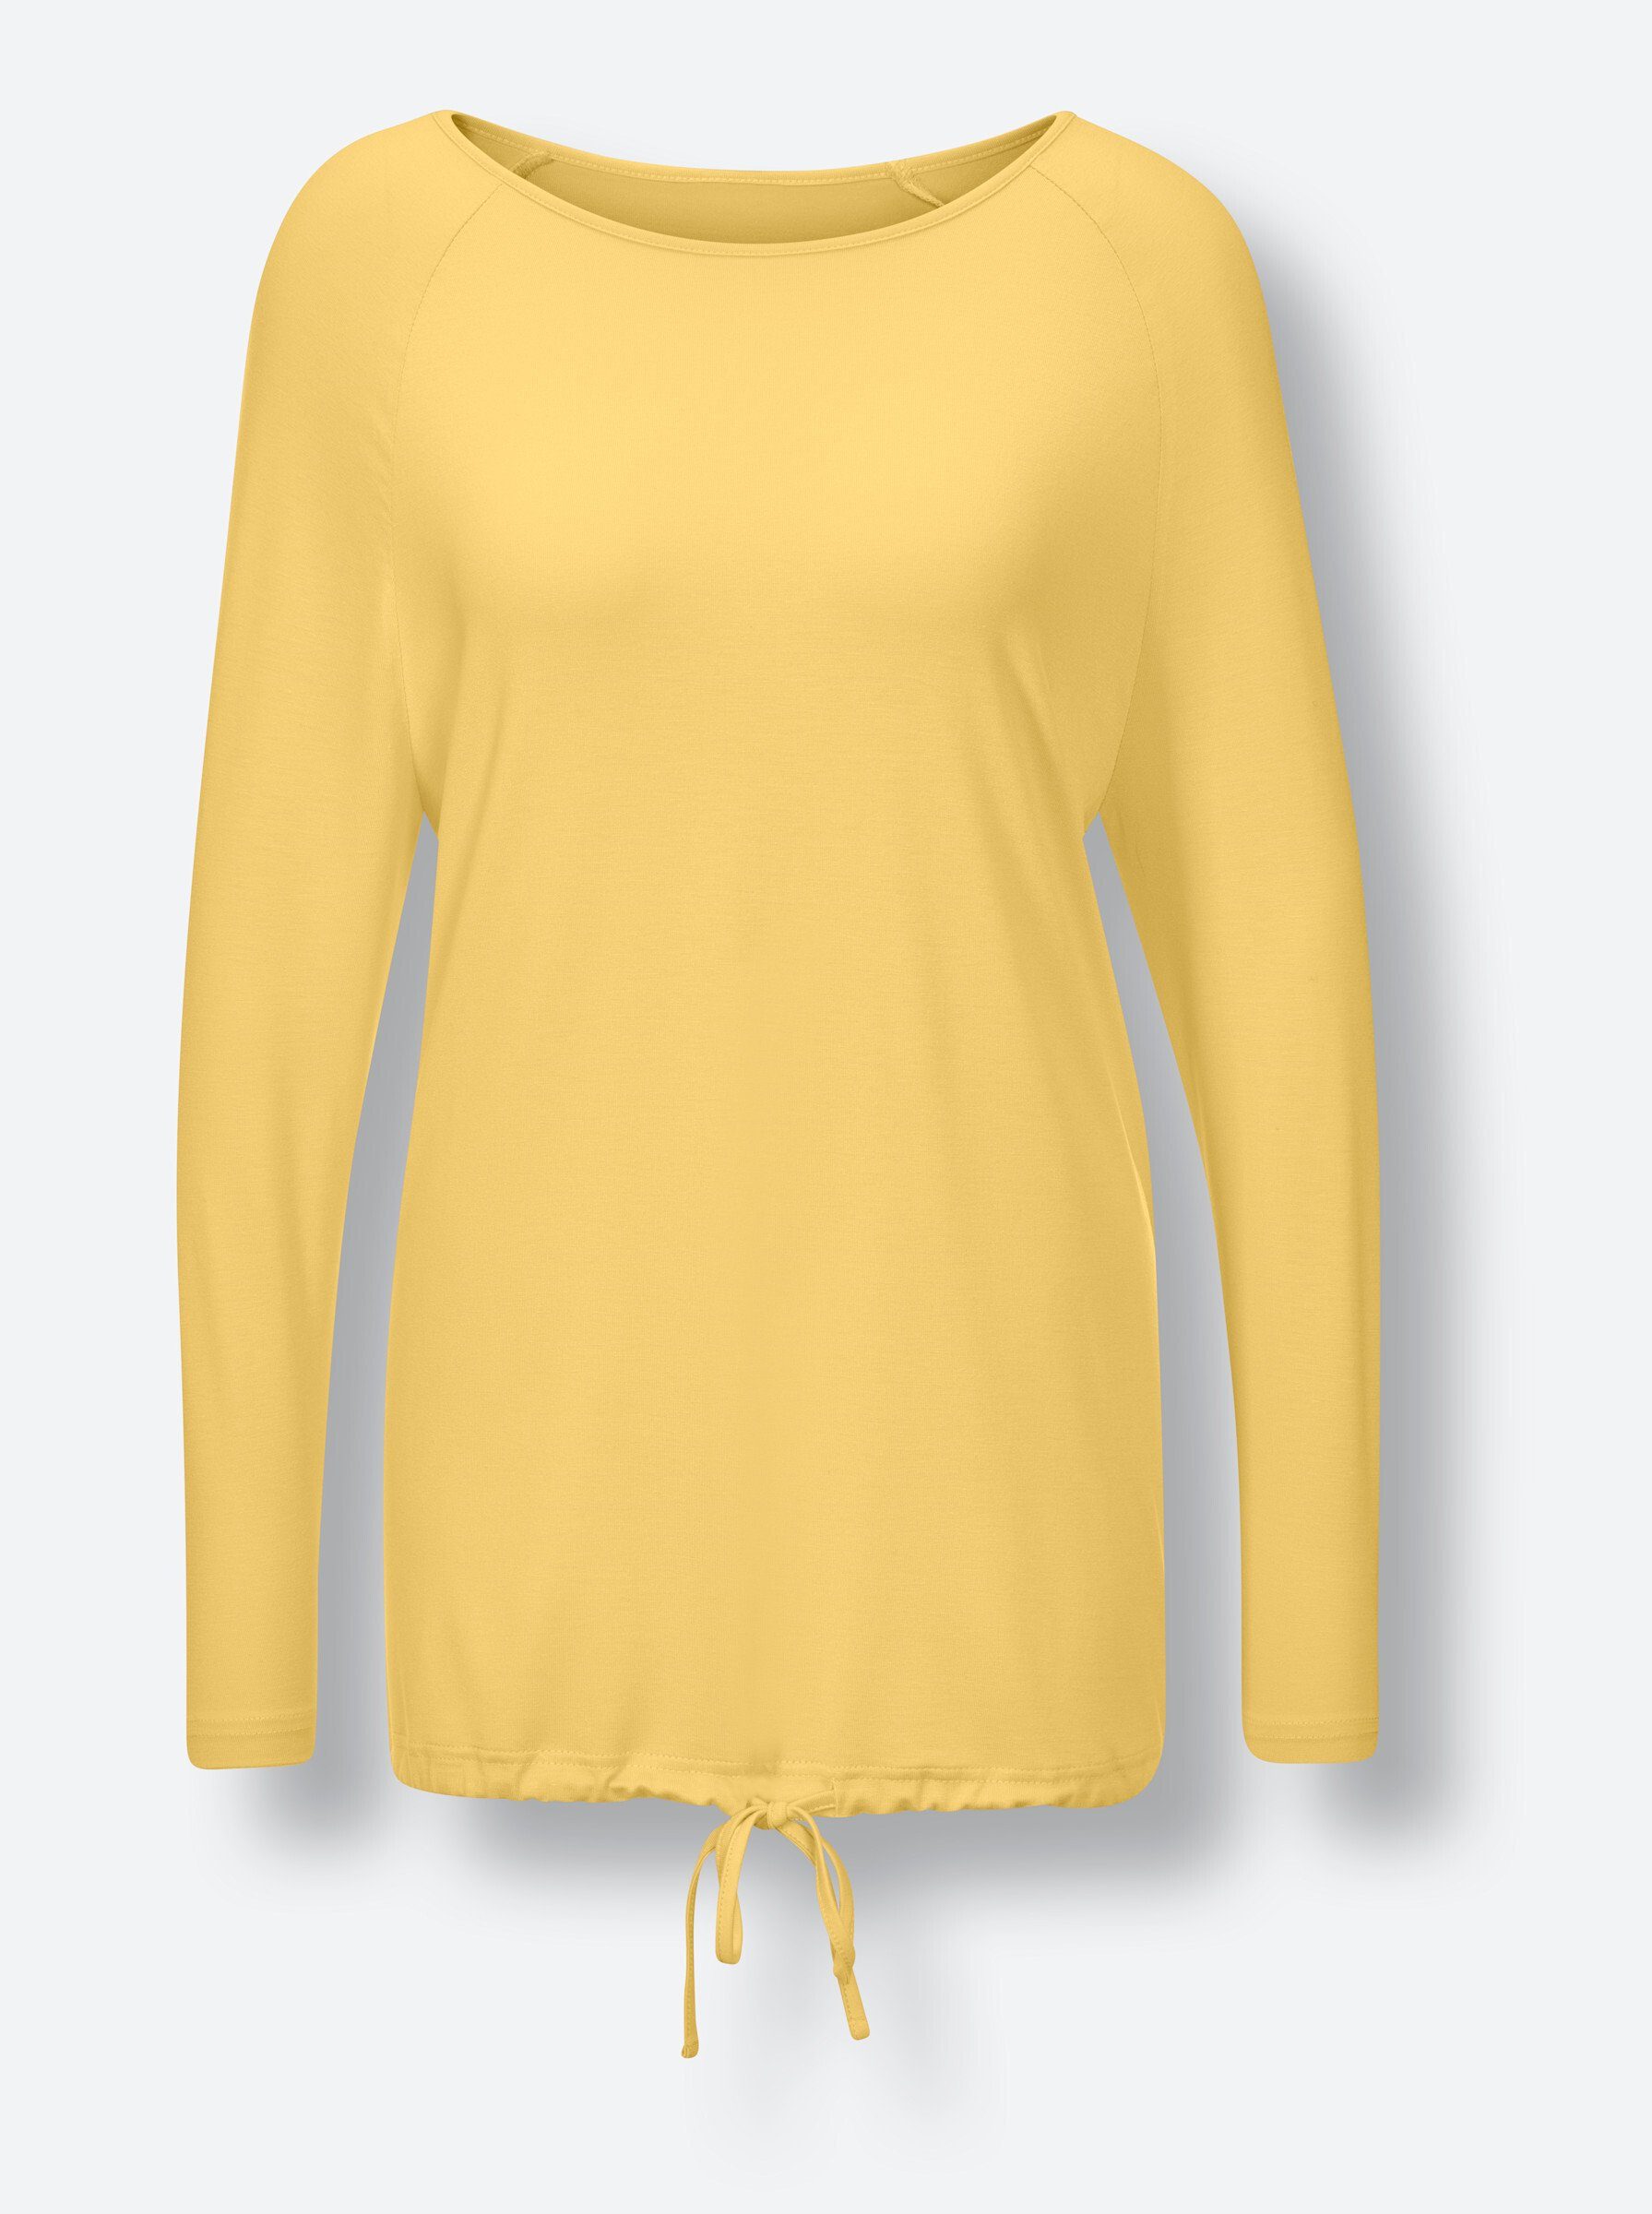 WEIDEN Schlafanzug gelb-gemustert WITT